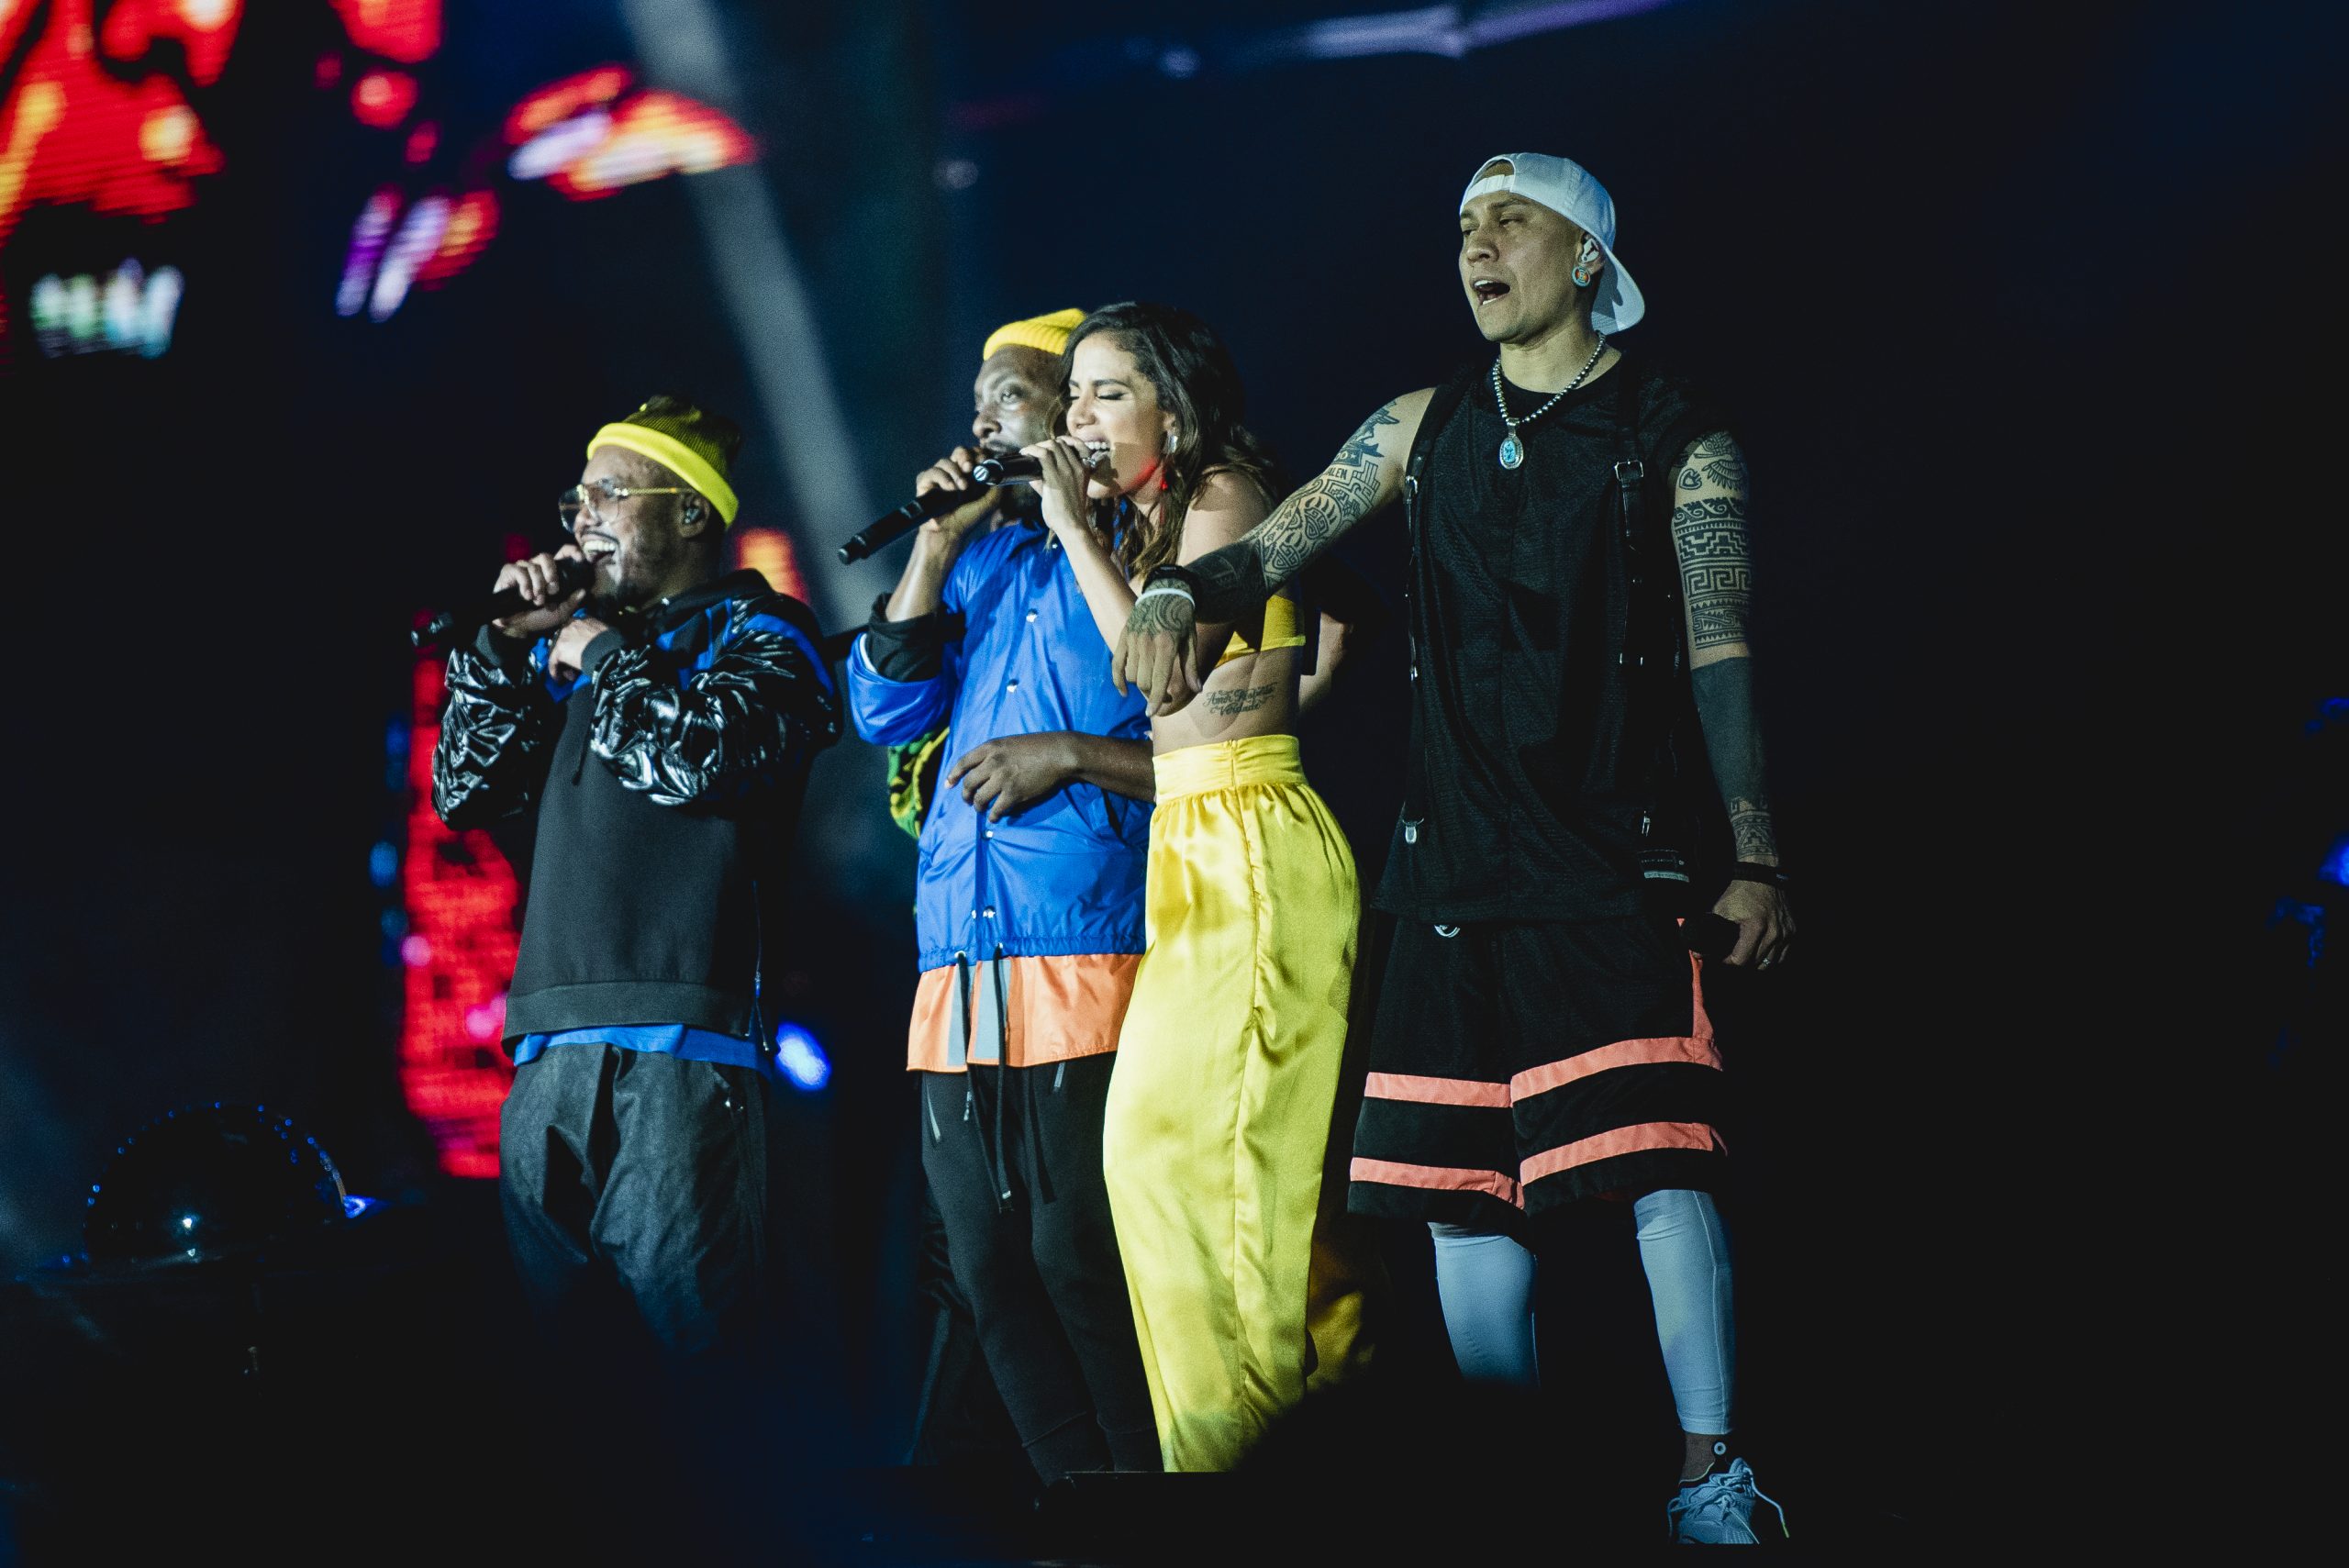 Virou referência: Anitta é citada em música nova do Black Eyed Peas com Shakira